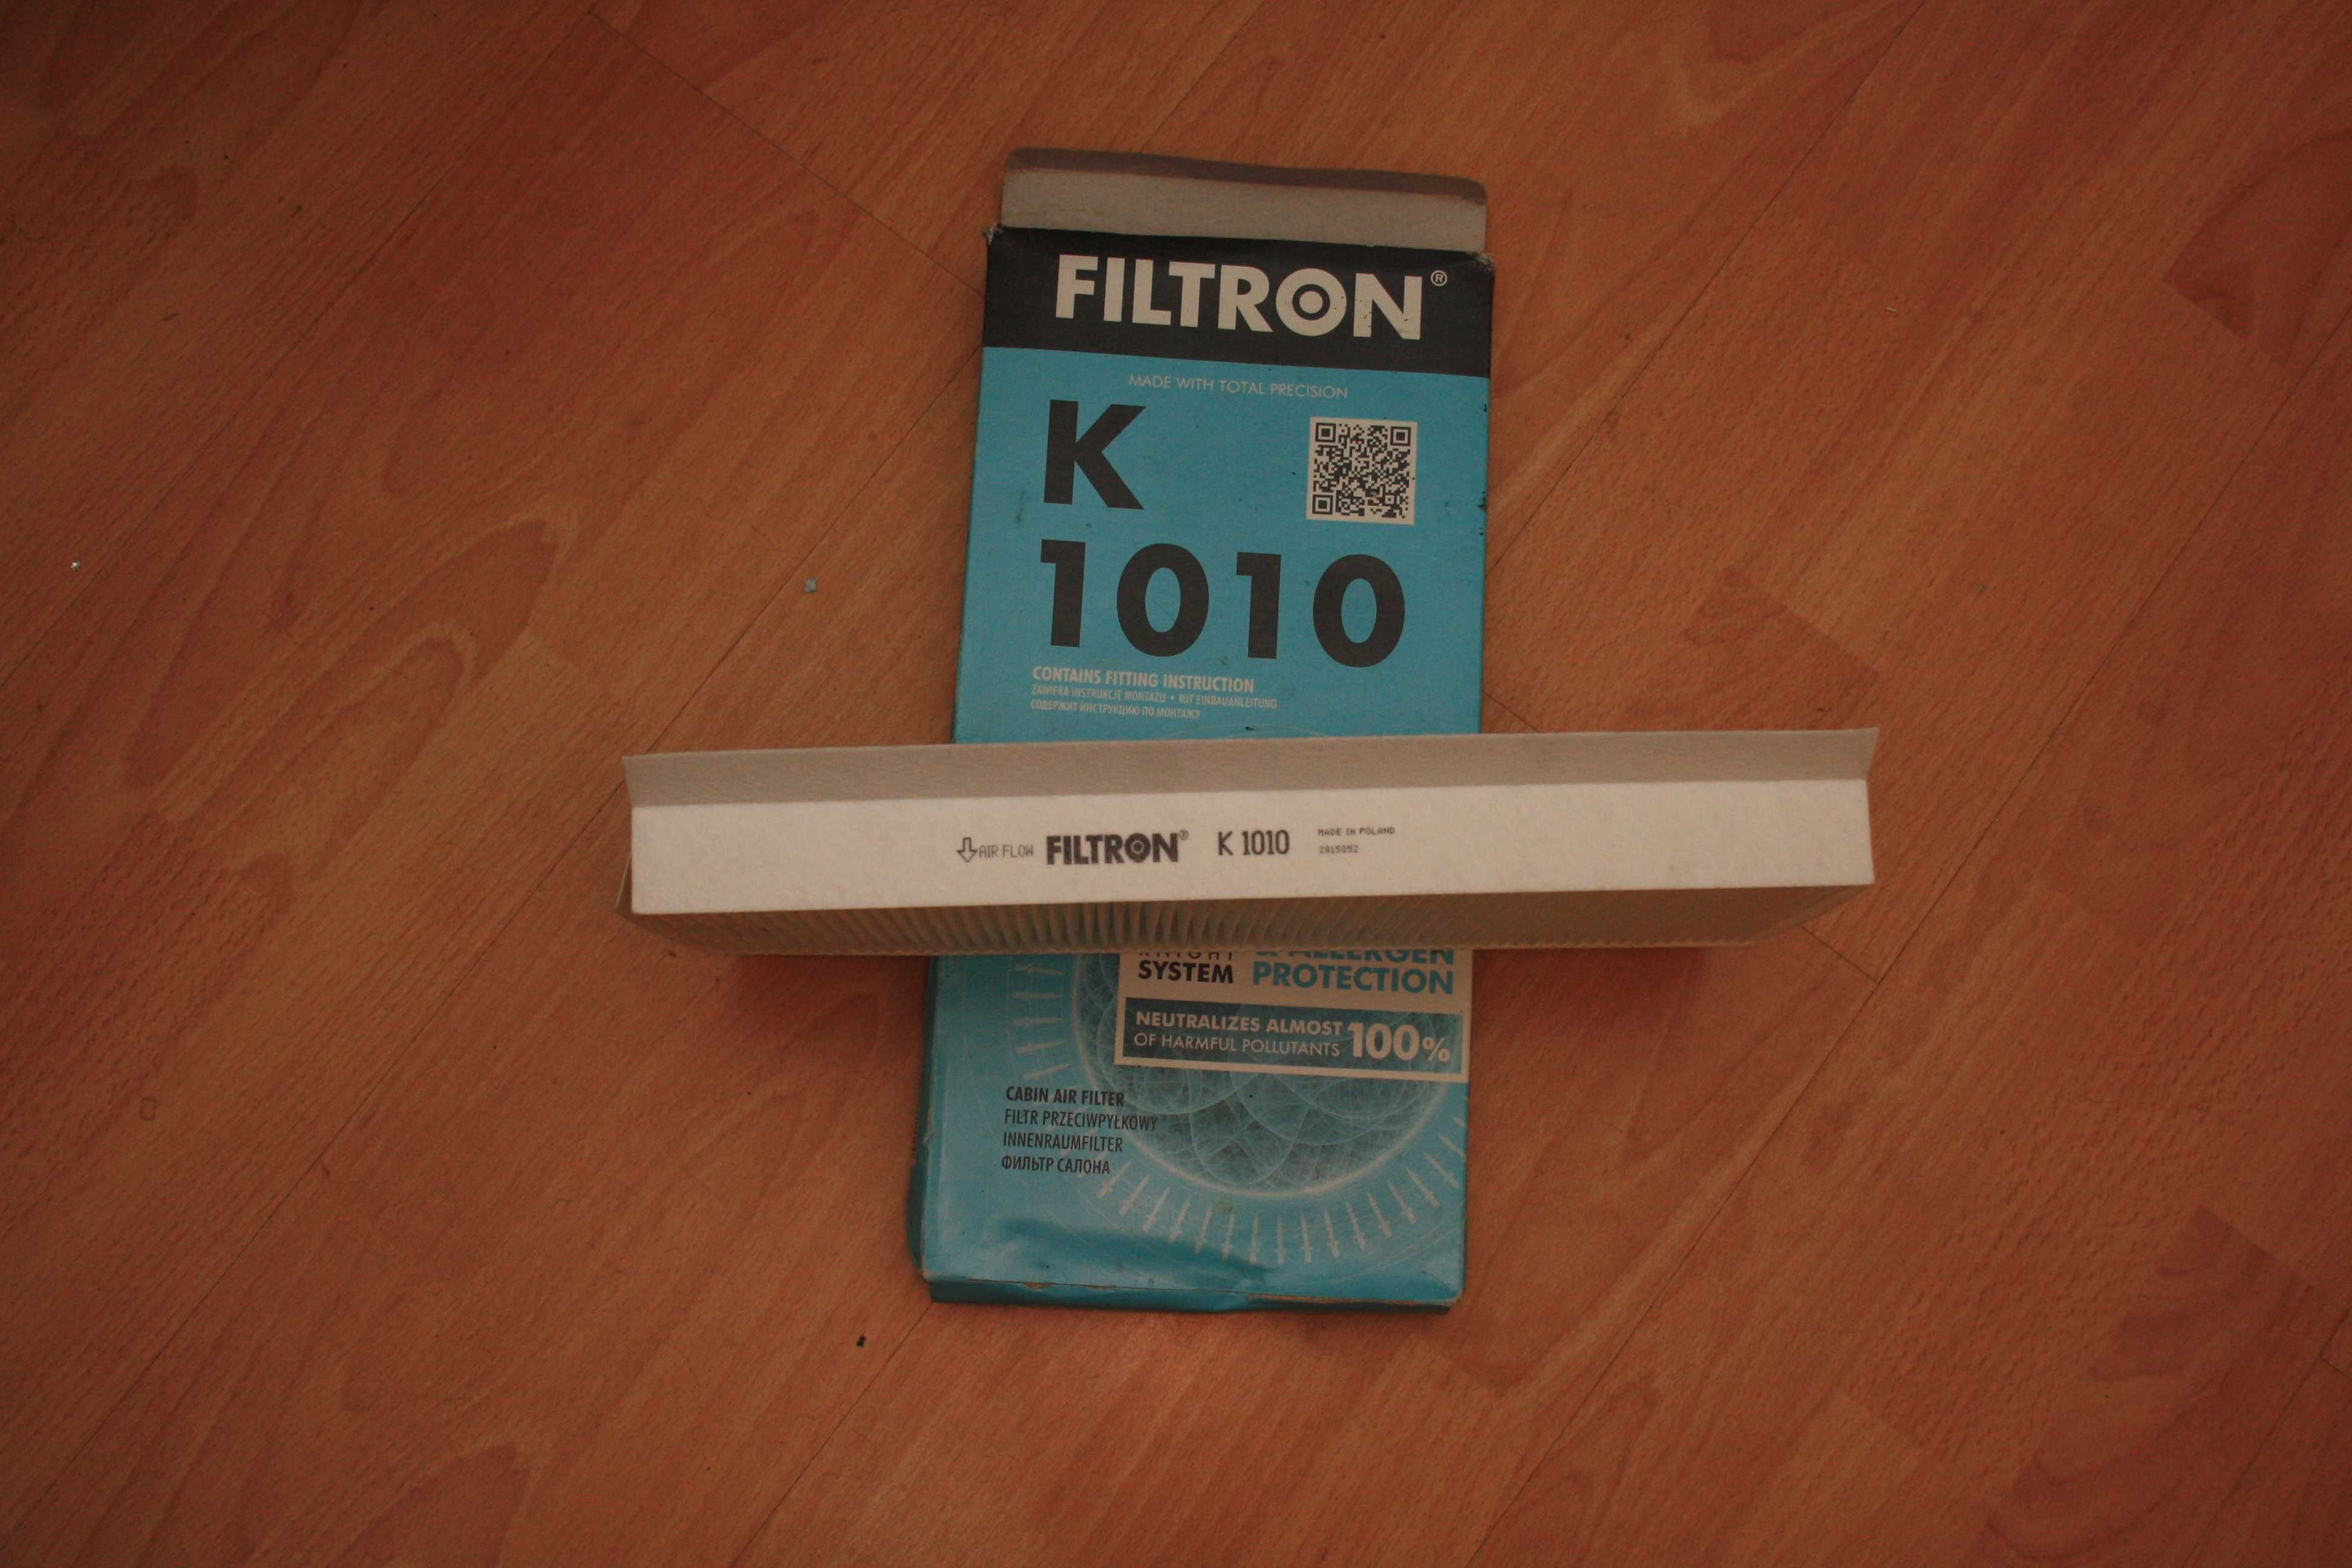 FILTRON K1010 filtr kabinowy.